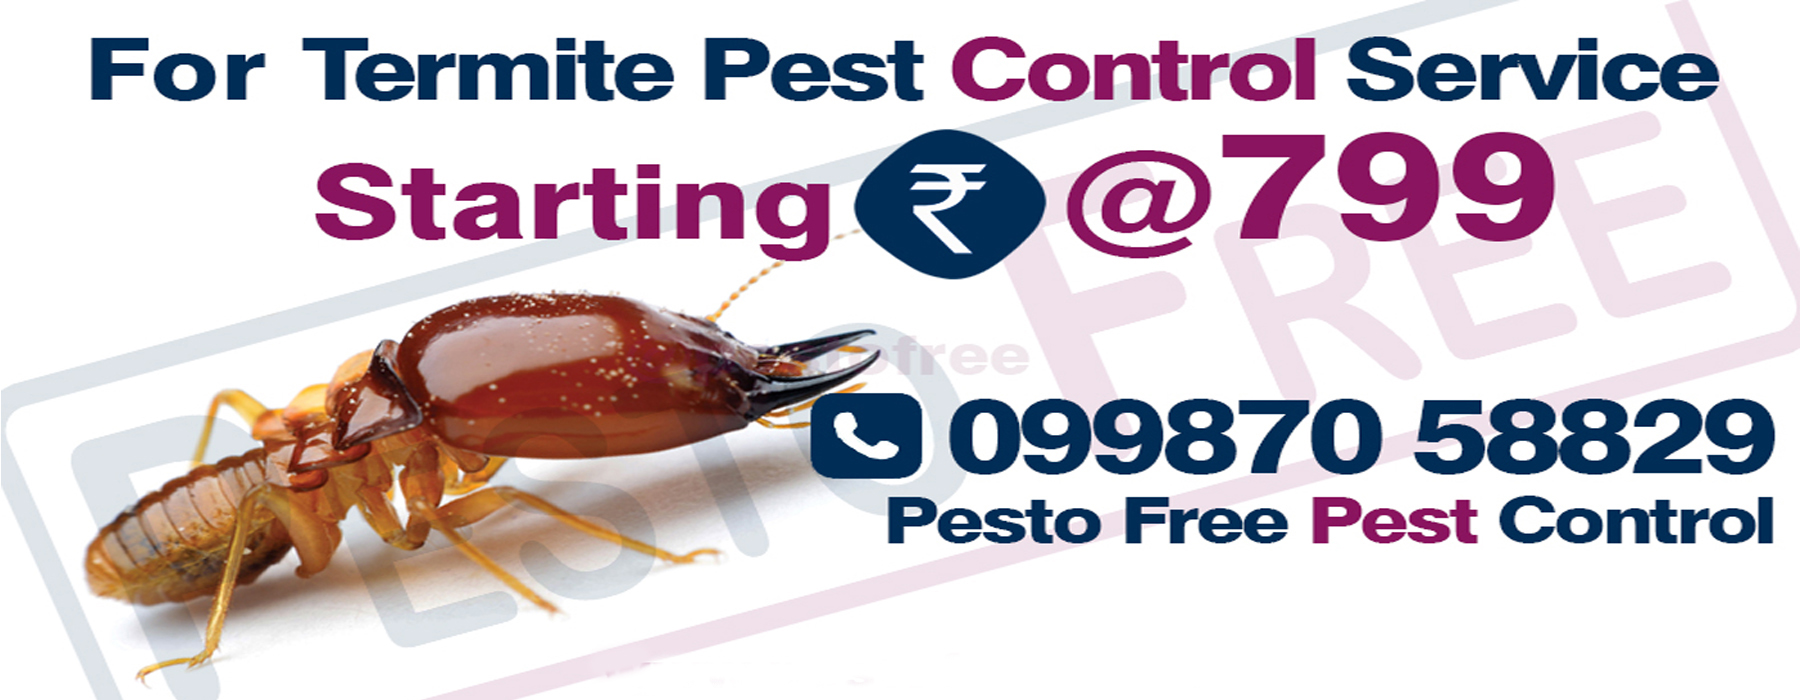 Termite Pest Control In Mumbai